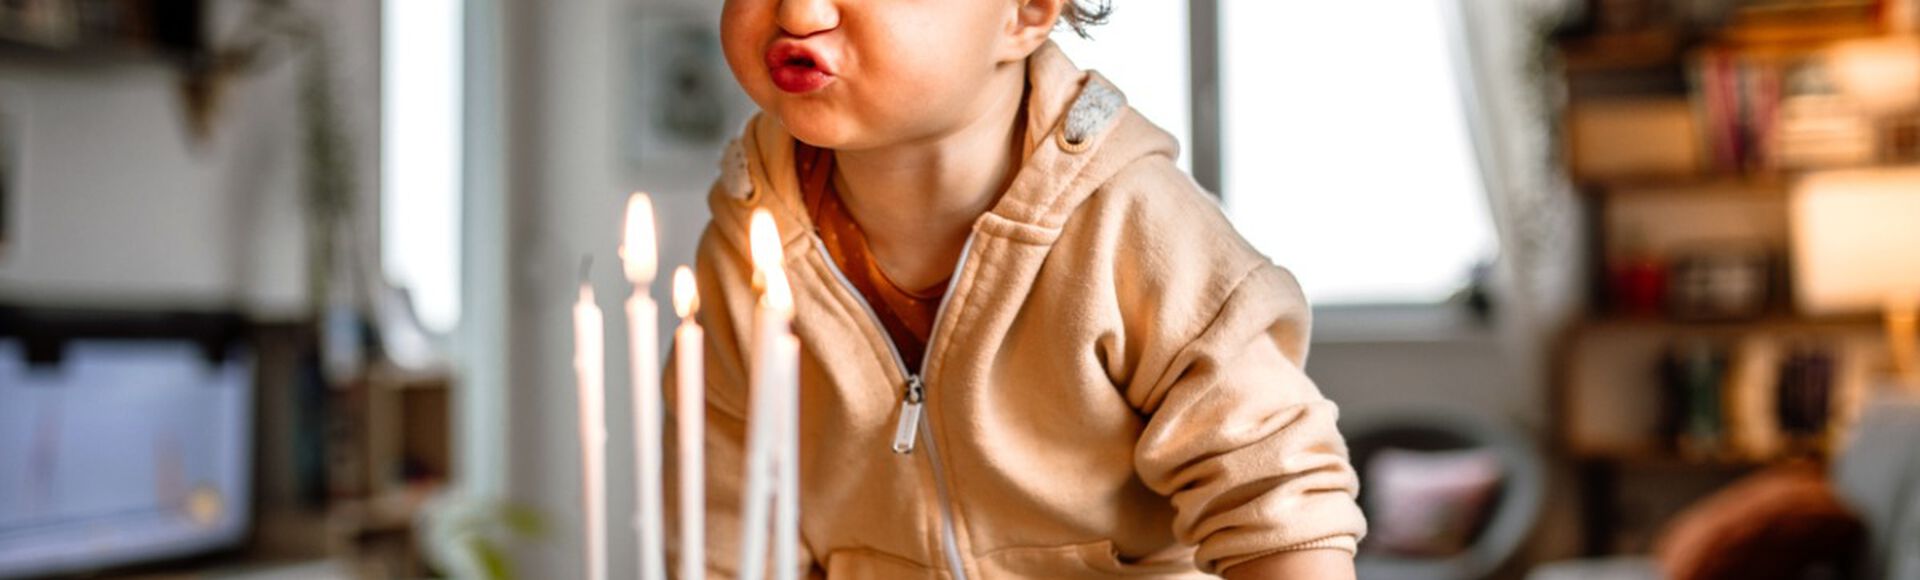 Criança pequena soprando velas em bolo de aniversário